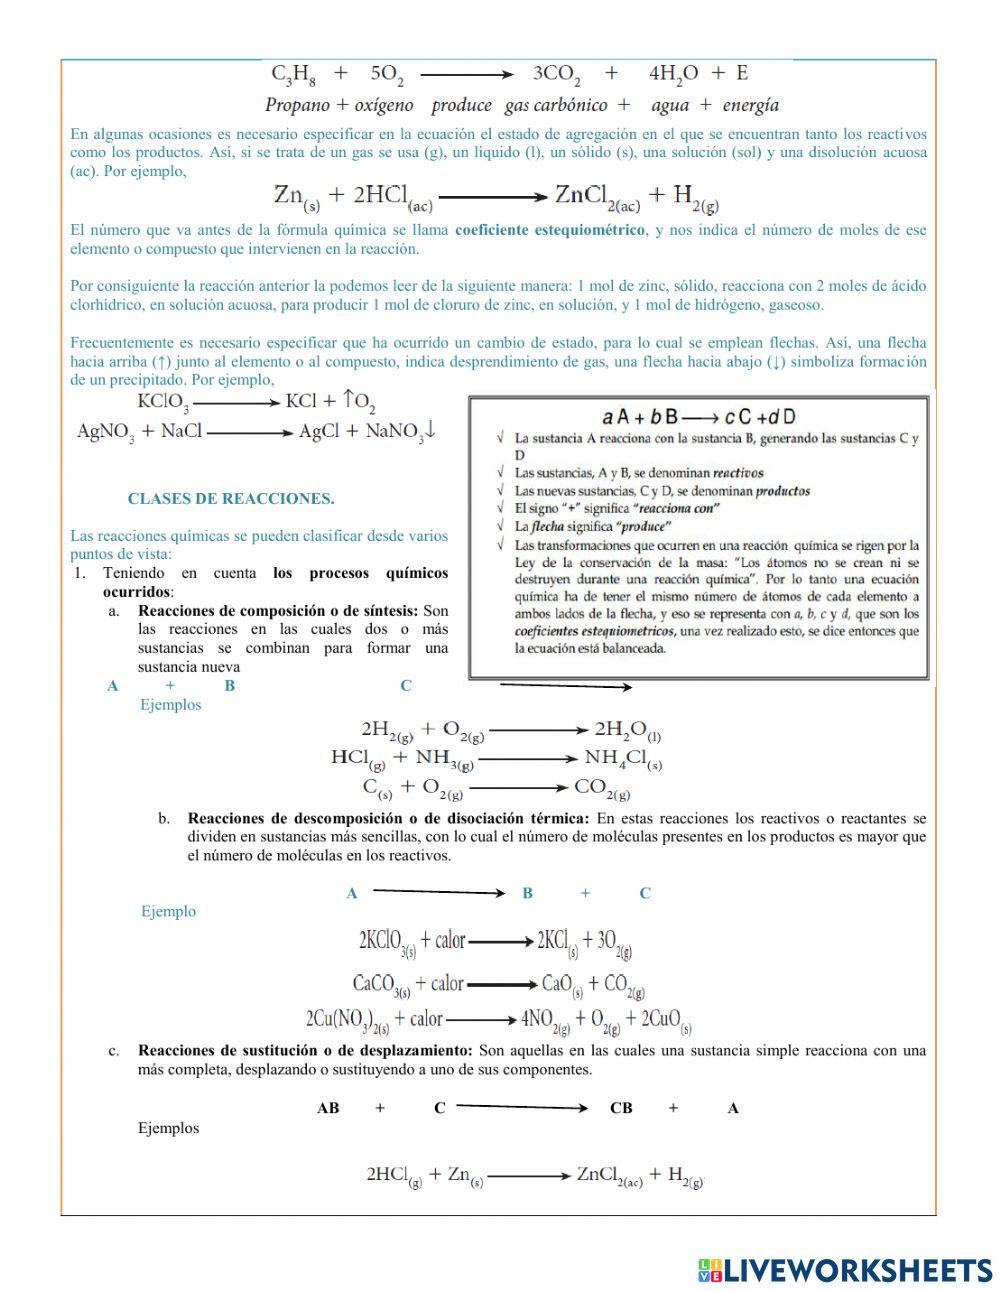 Reacciones y ecuaciones químicas